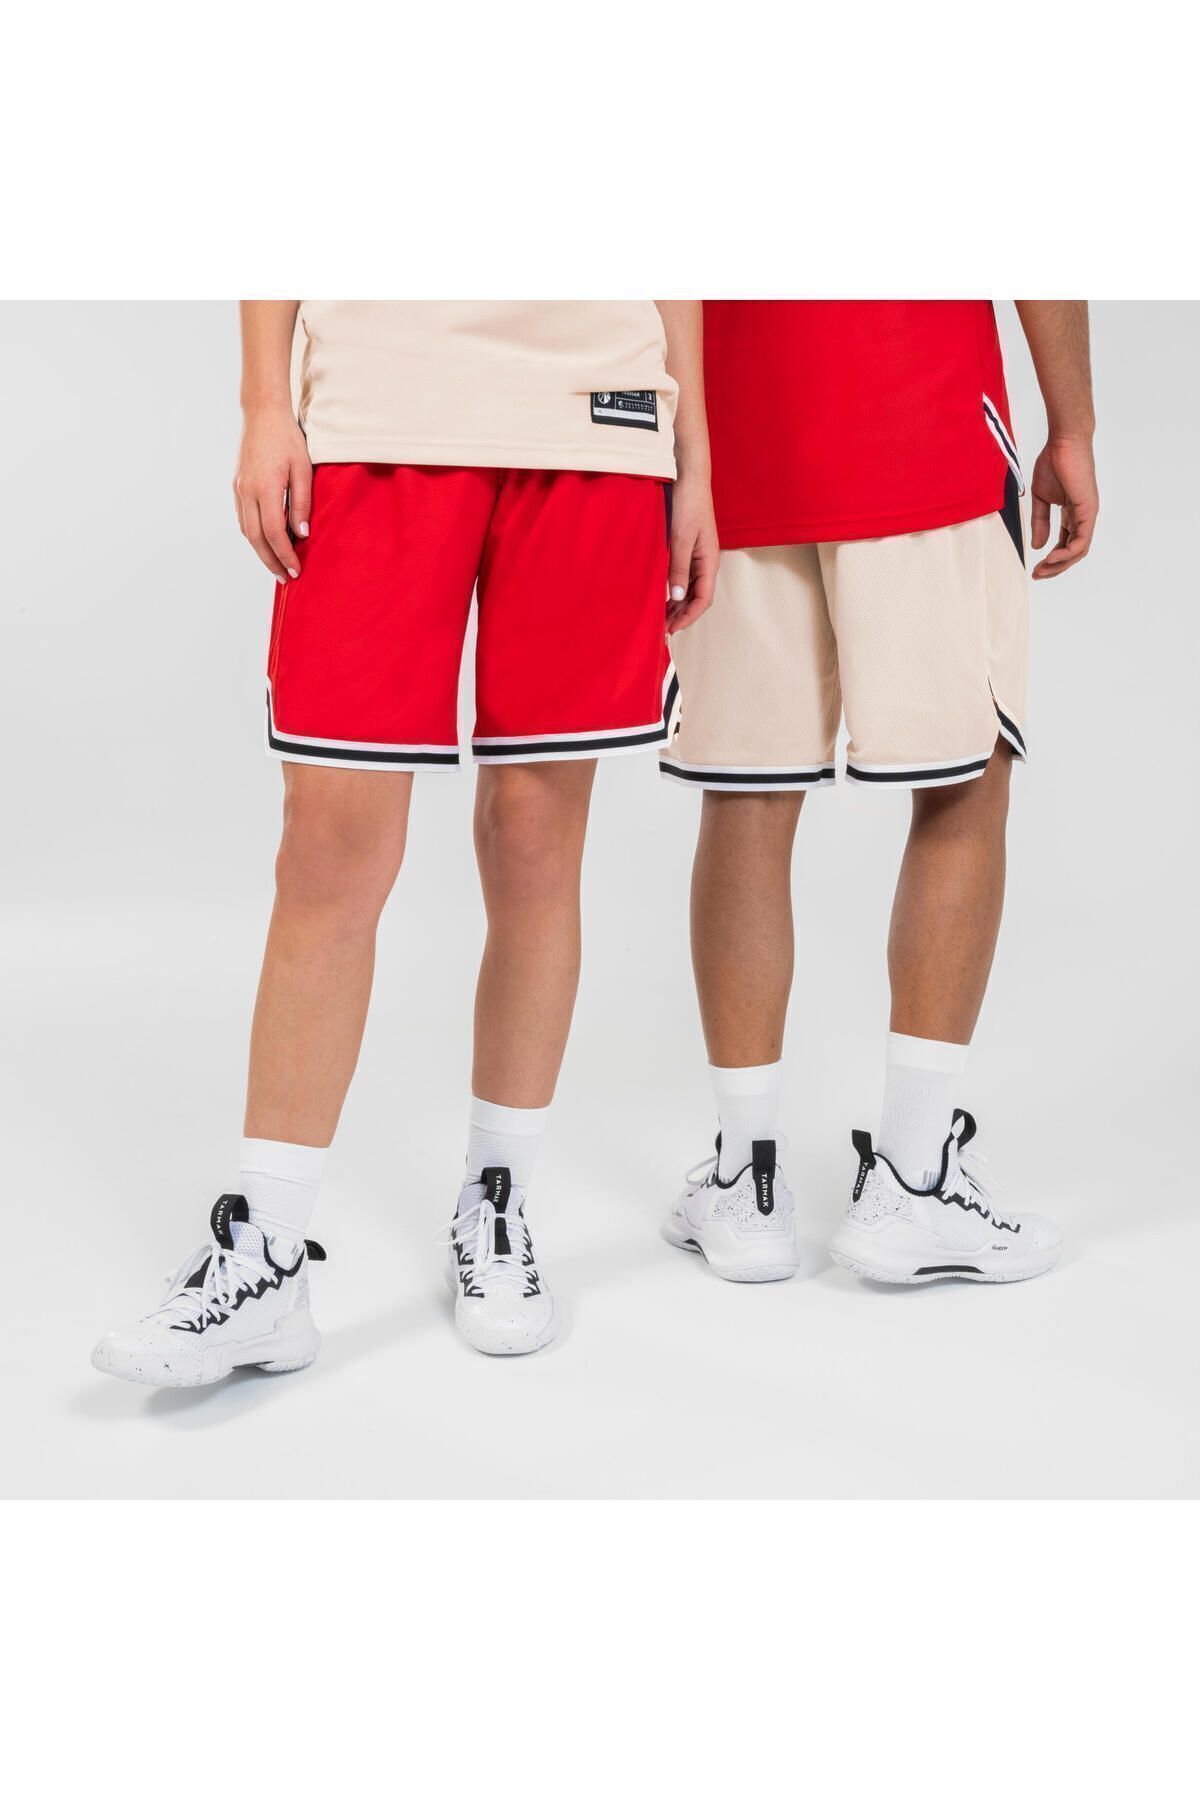 Decathlon Yetişkin Çift Taraflı Basketbol Şortu - Kırmızı/Bej - SH500R